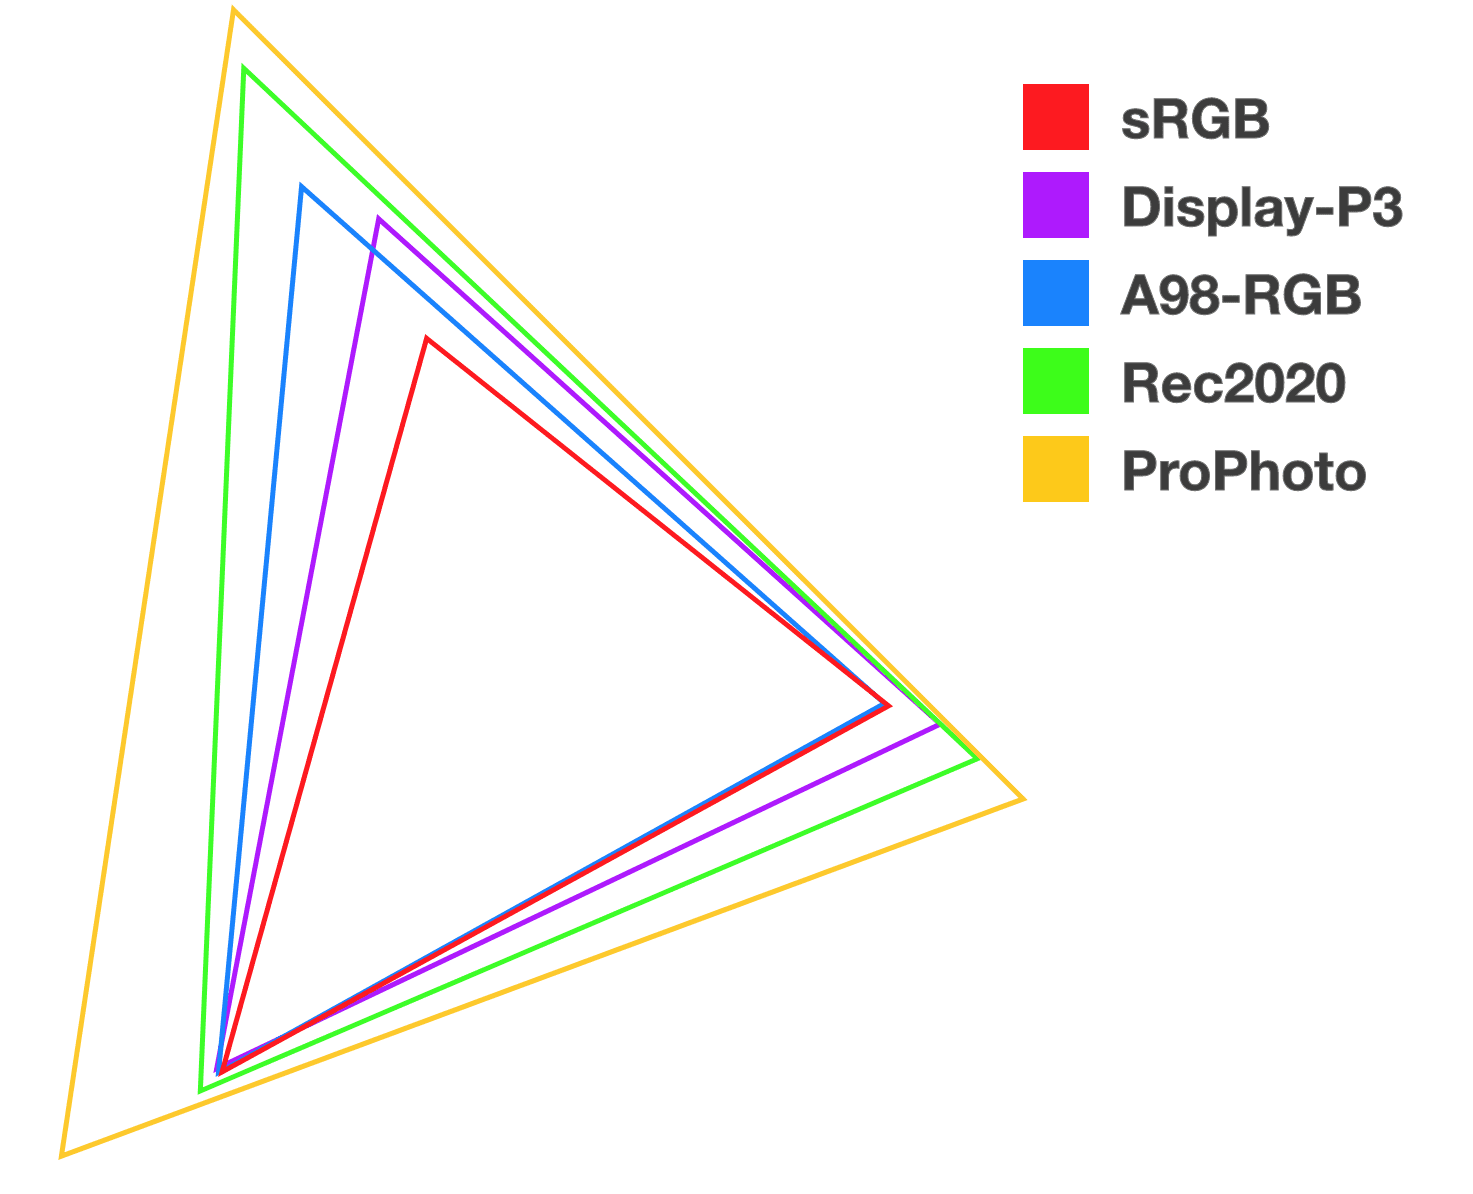 Cinq triangles empilés de couleurs différentes pour illustrer la relation et la taille de chacun des nouveaux espaces de couleur.